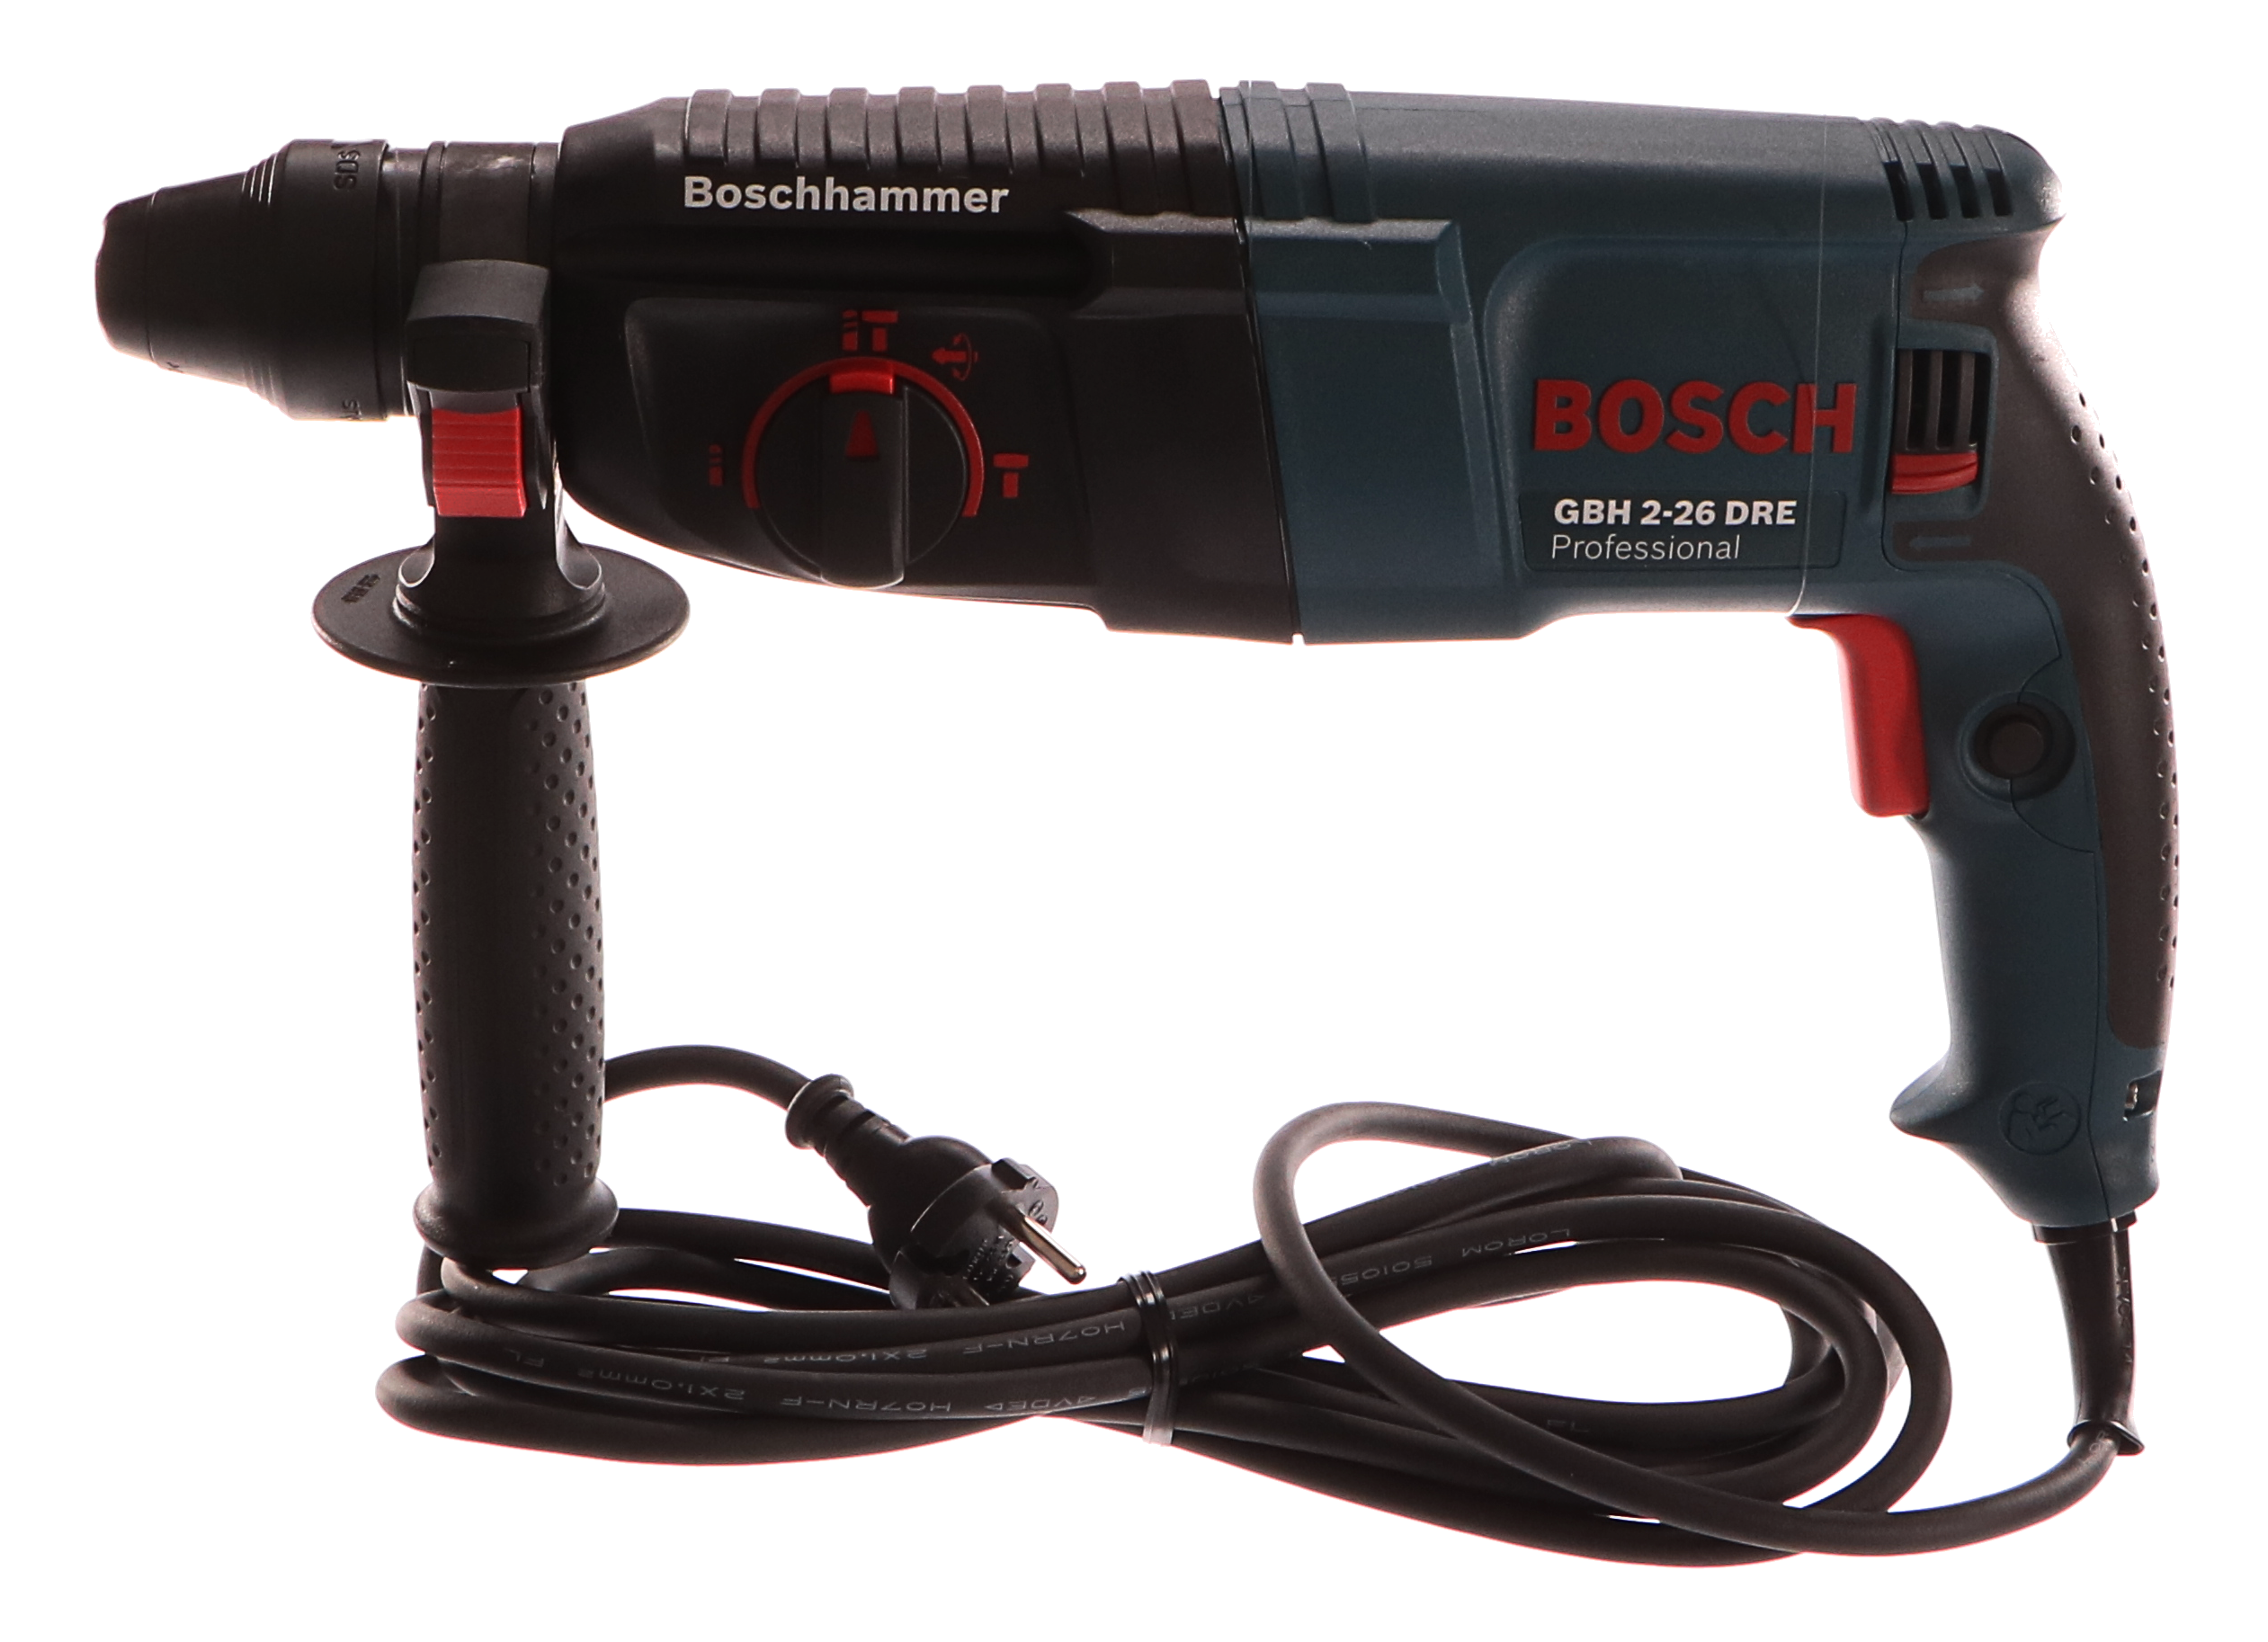 Vrtací kladivo Bosch GBH 2-26 DRE SDS-Plus 800W 2,7J a kufr